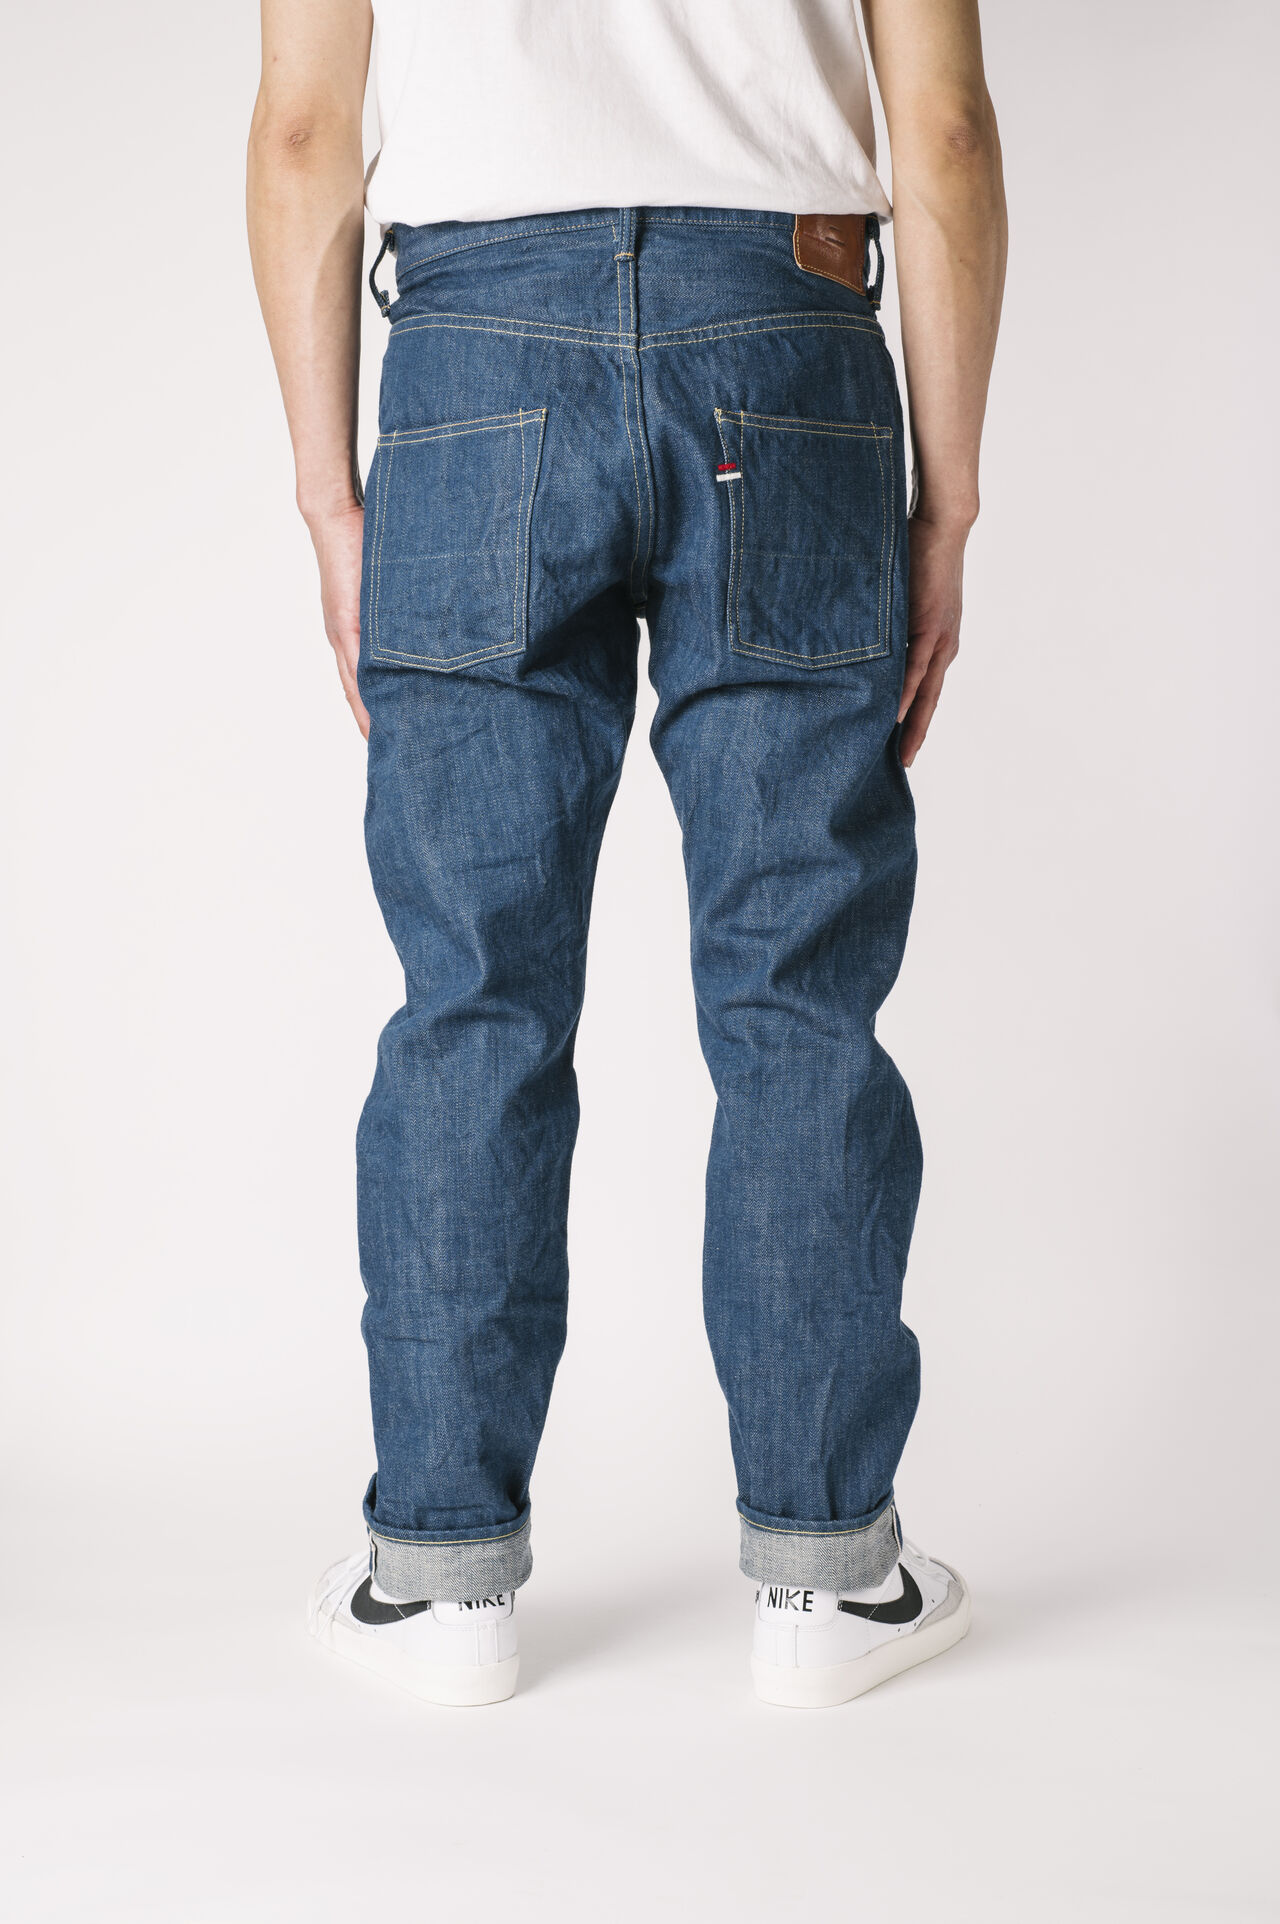 KHT 13oz "Kaze" Fade Blue High Tapered Jeans,, large image number 1